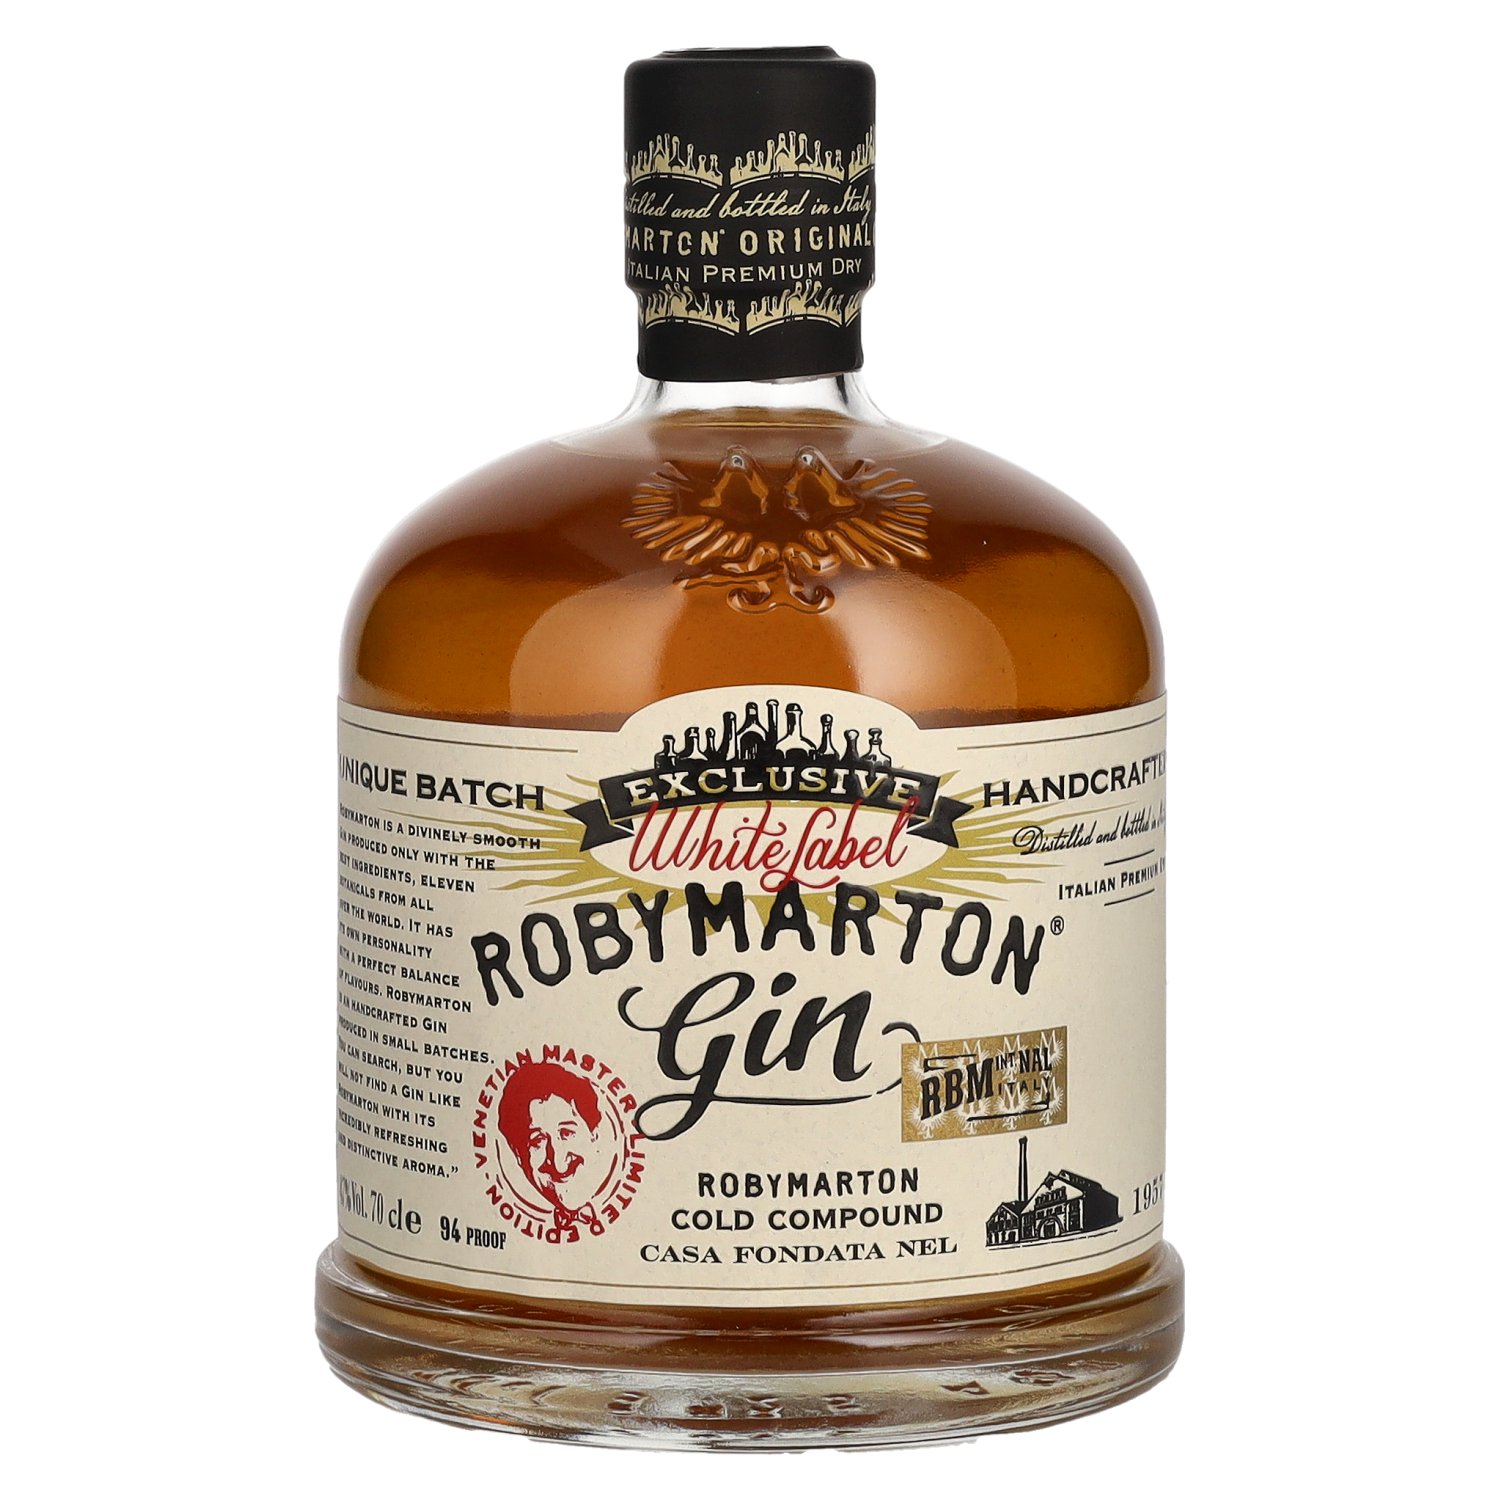 Roby Marton gin exclusive White label 47% 0,7L